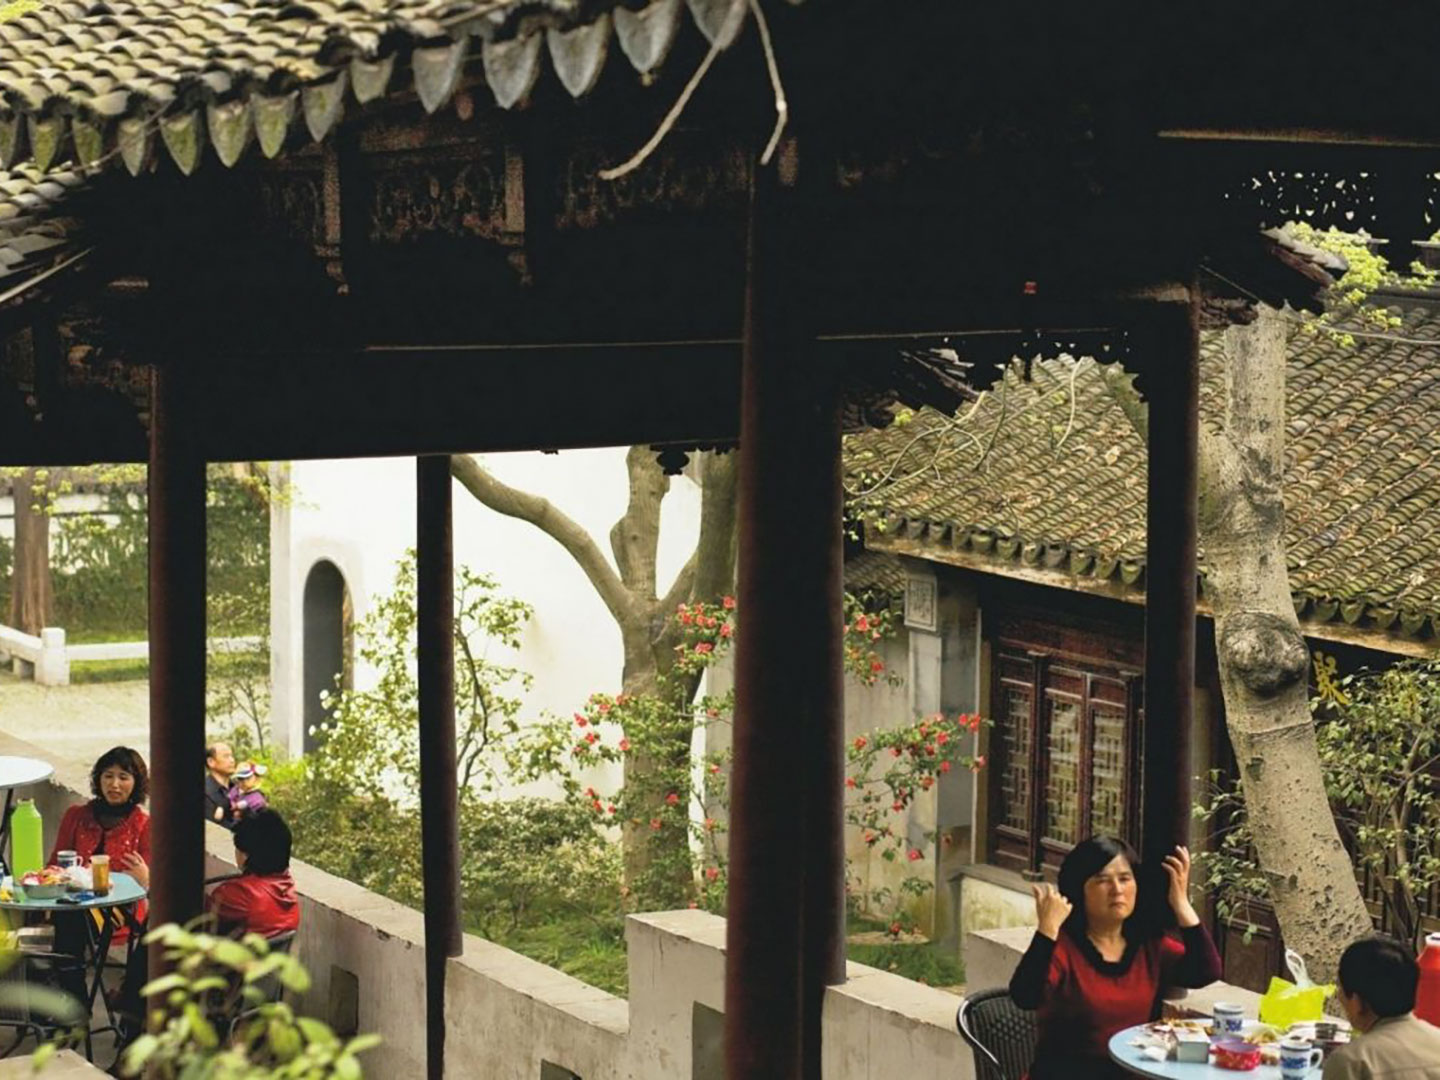 Pavilion teahouses